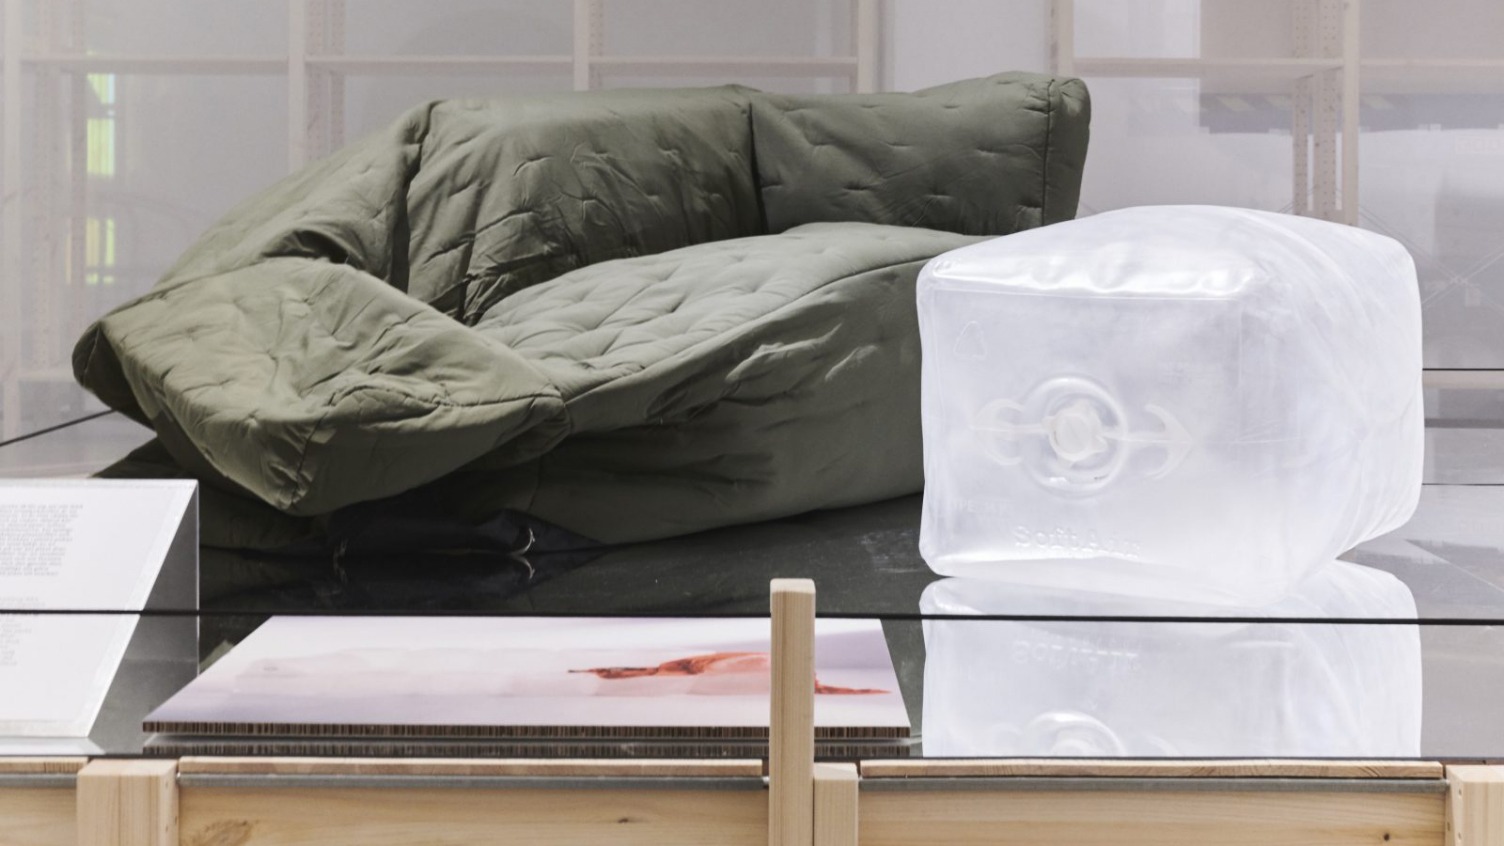 En grön, halvt uppblåst soffa från IKEA a.i.r kollektionen och en enhet av den uppblåsta inredningen som liknar en gigantisk isbit.